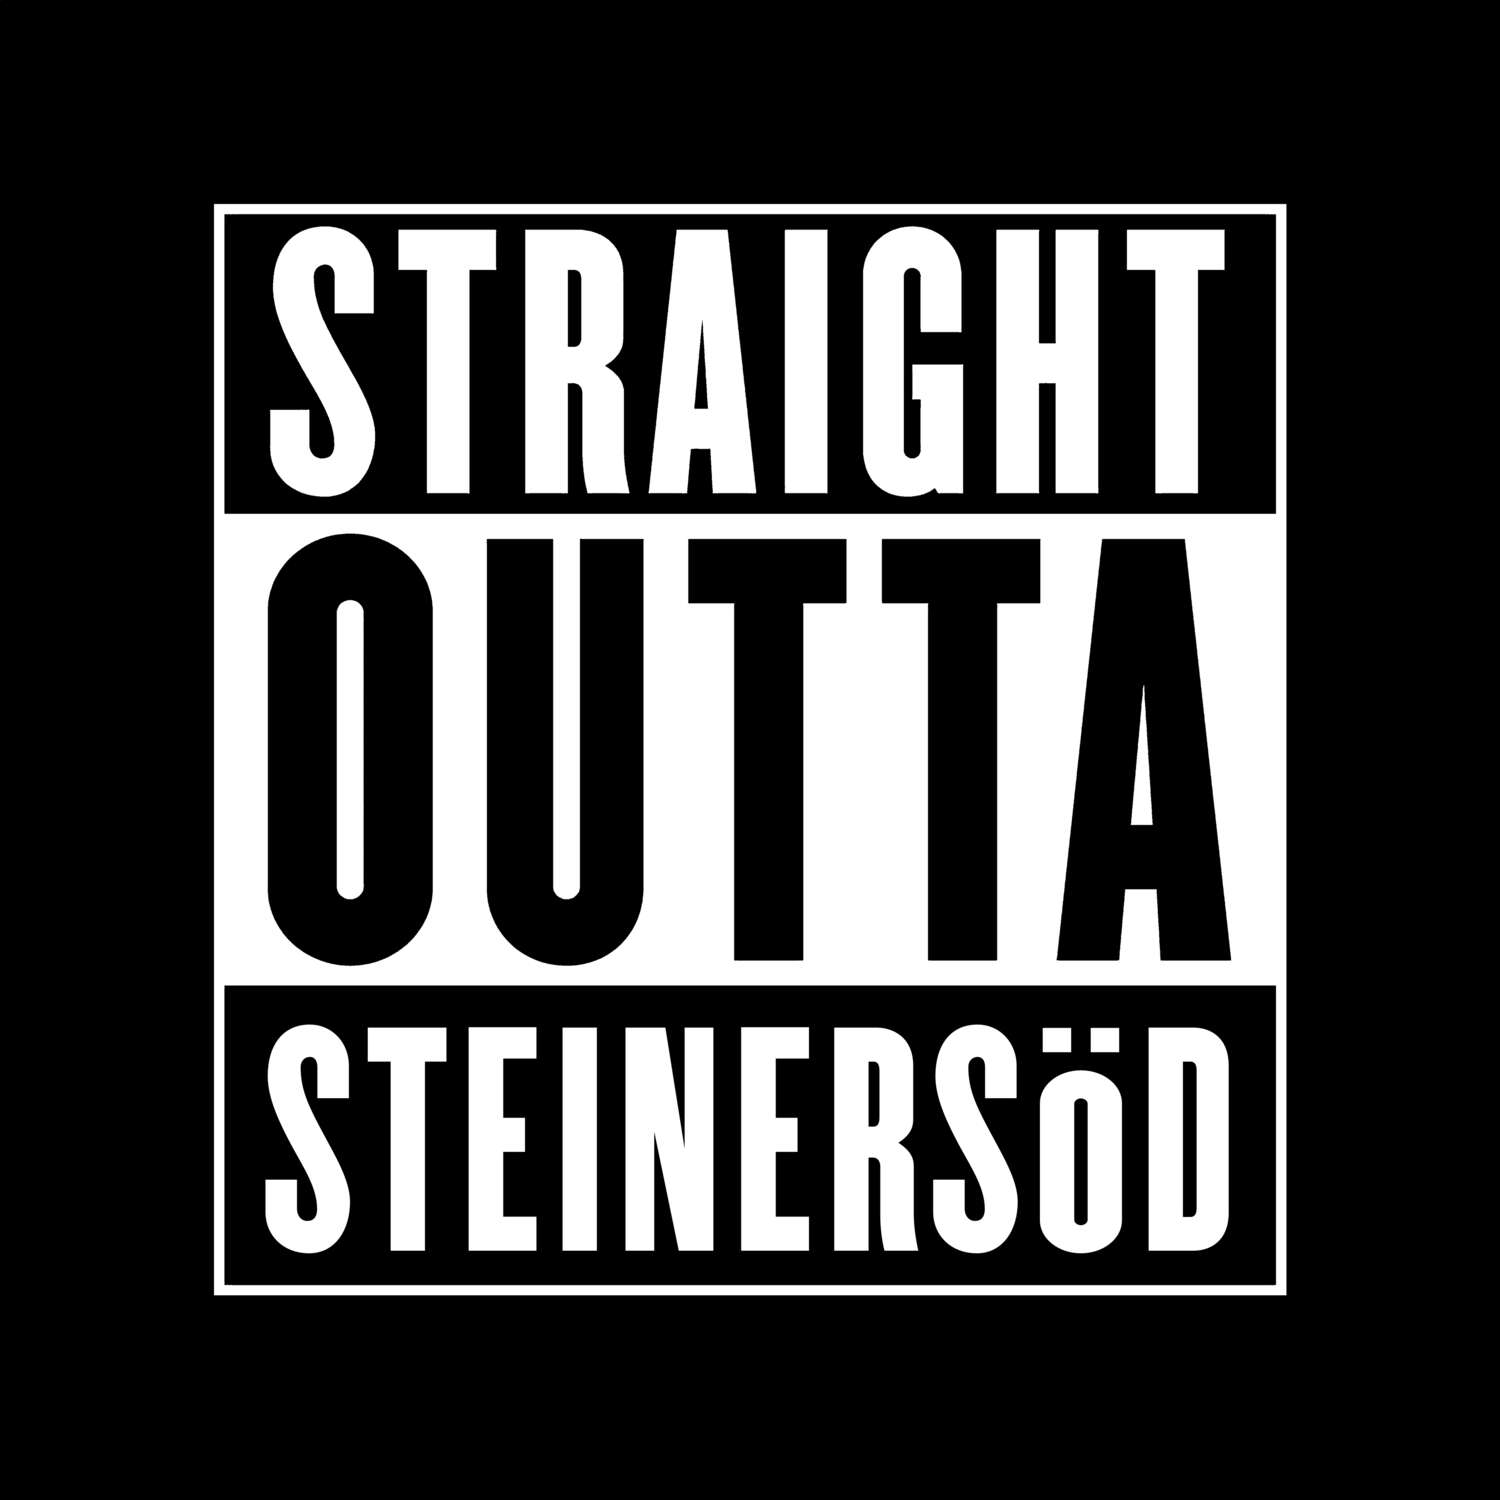 Steinersöd T-Shirt »Straight Outta«